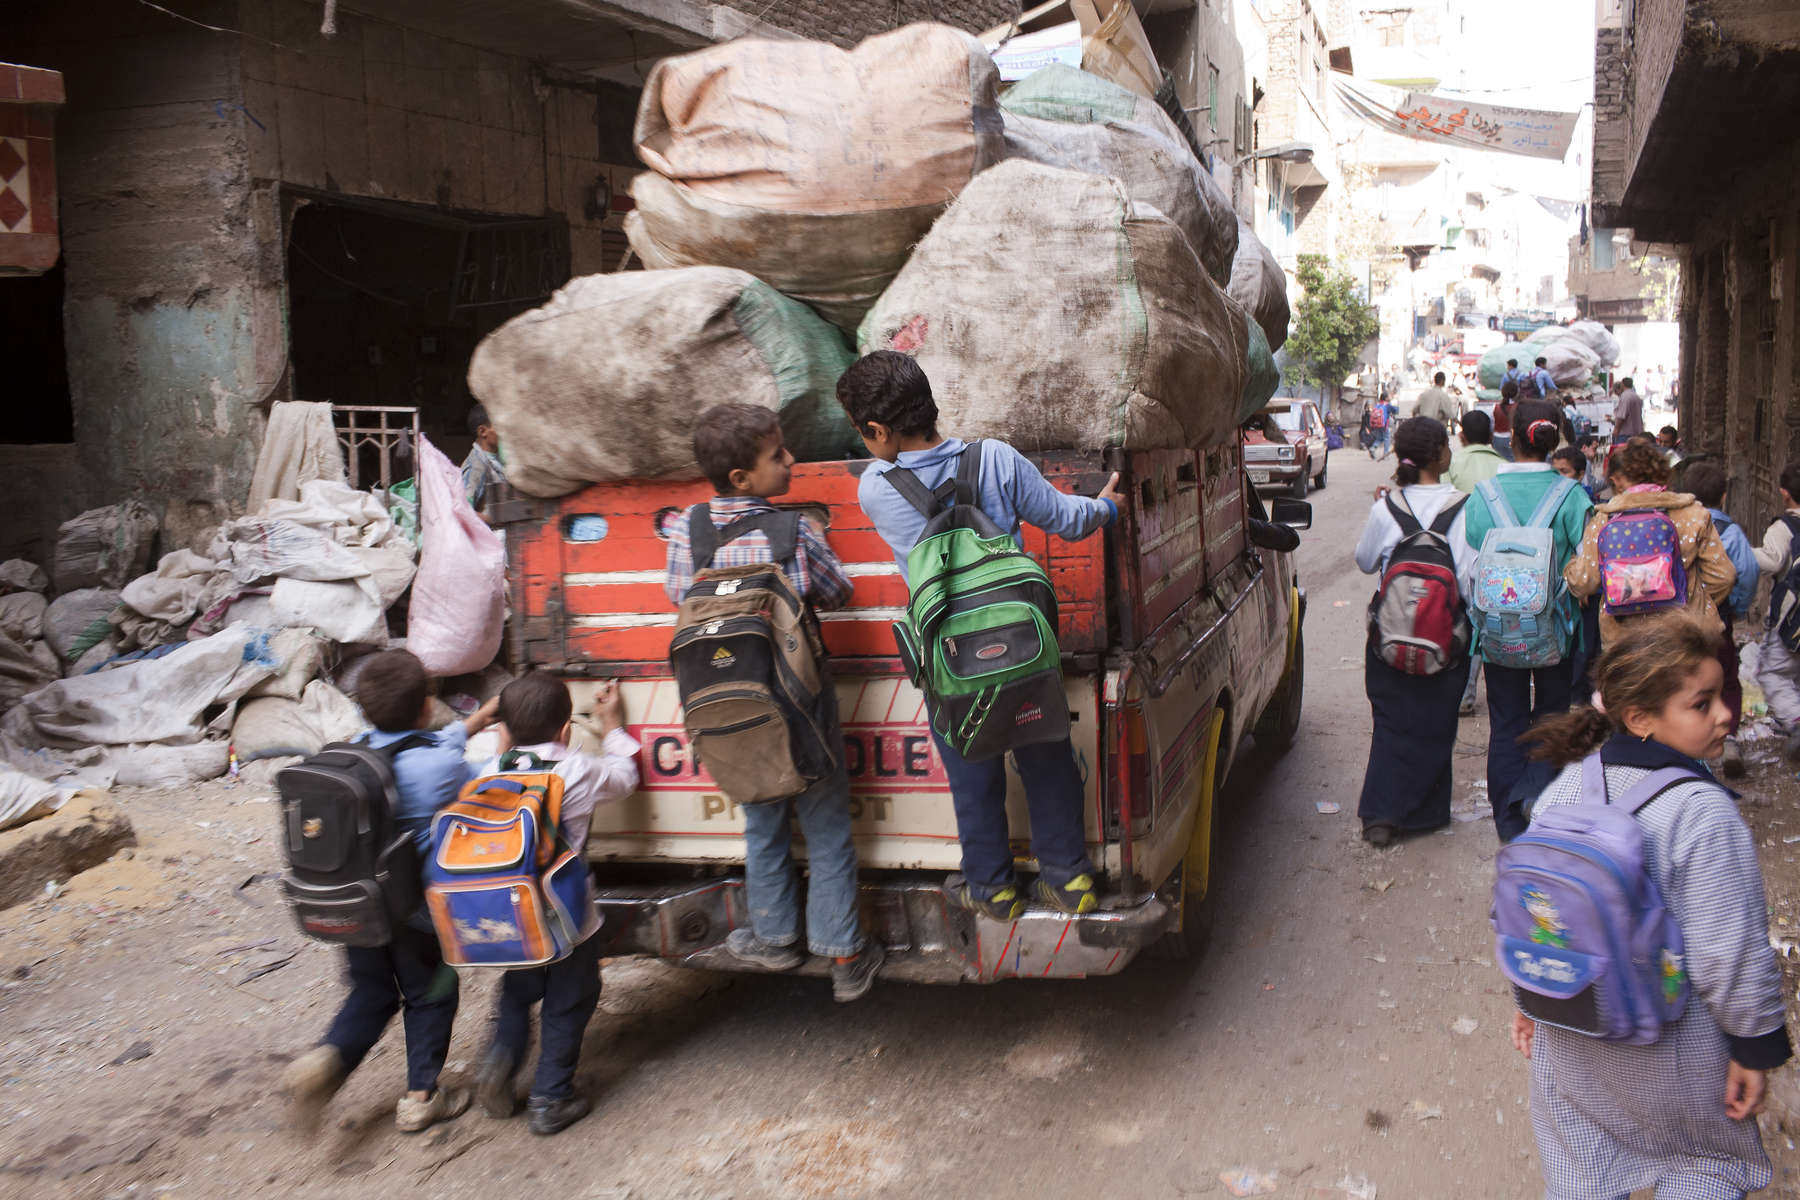 Zabaleen of Moqqatam - Children Going To School